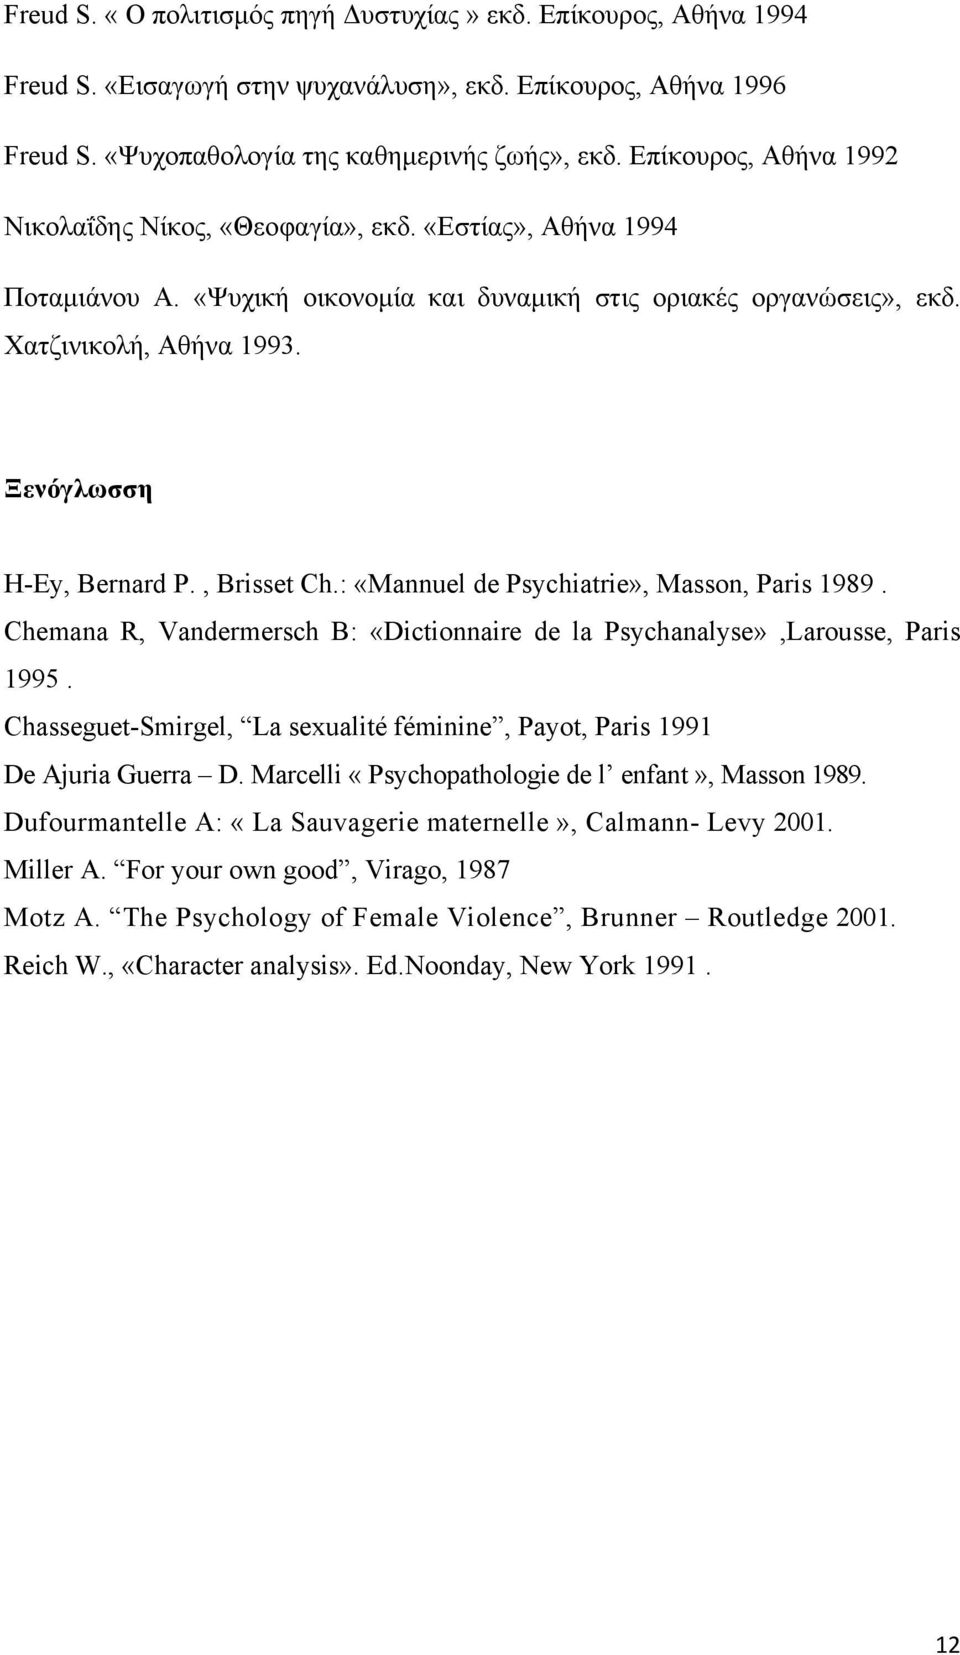 Ξενόγλωσση H-Ey, Bernard P., Brisset Ch.: «Mannuel de Psychiatrie», Masson, Paris 1989. Chemana R, Vandermersch B: «Dictionnaire de la Psychanalyse»,Larousse, Paris 1995.